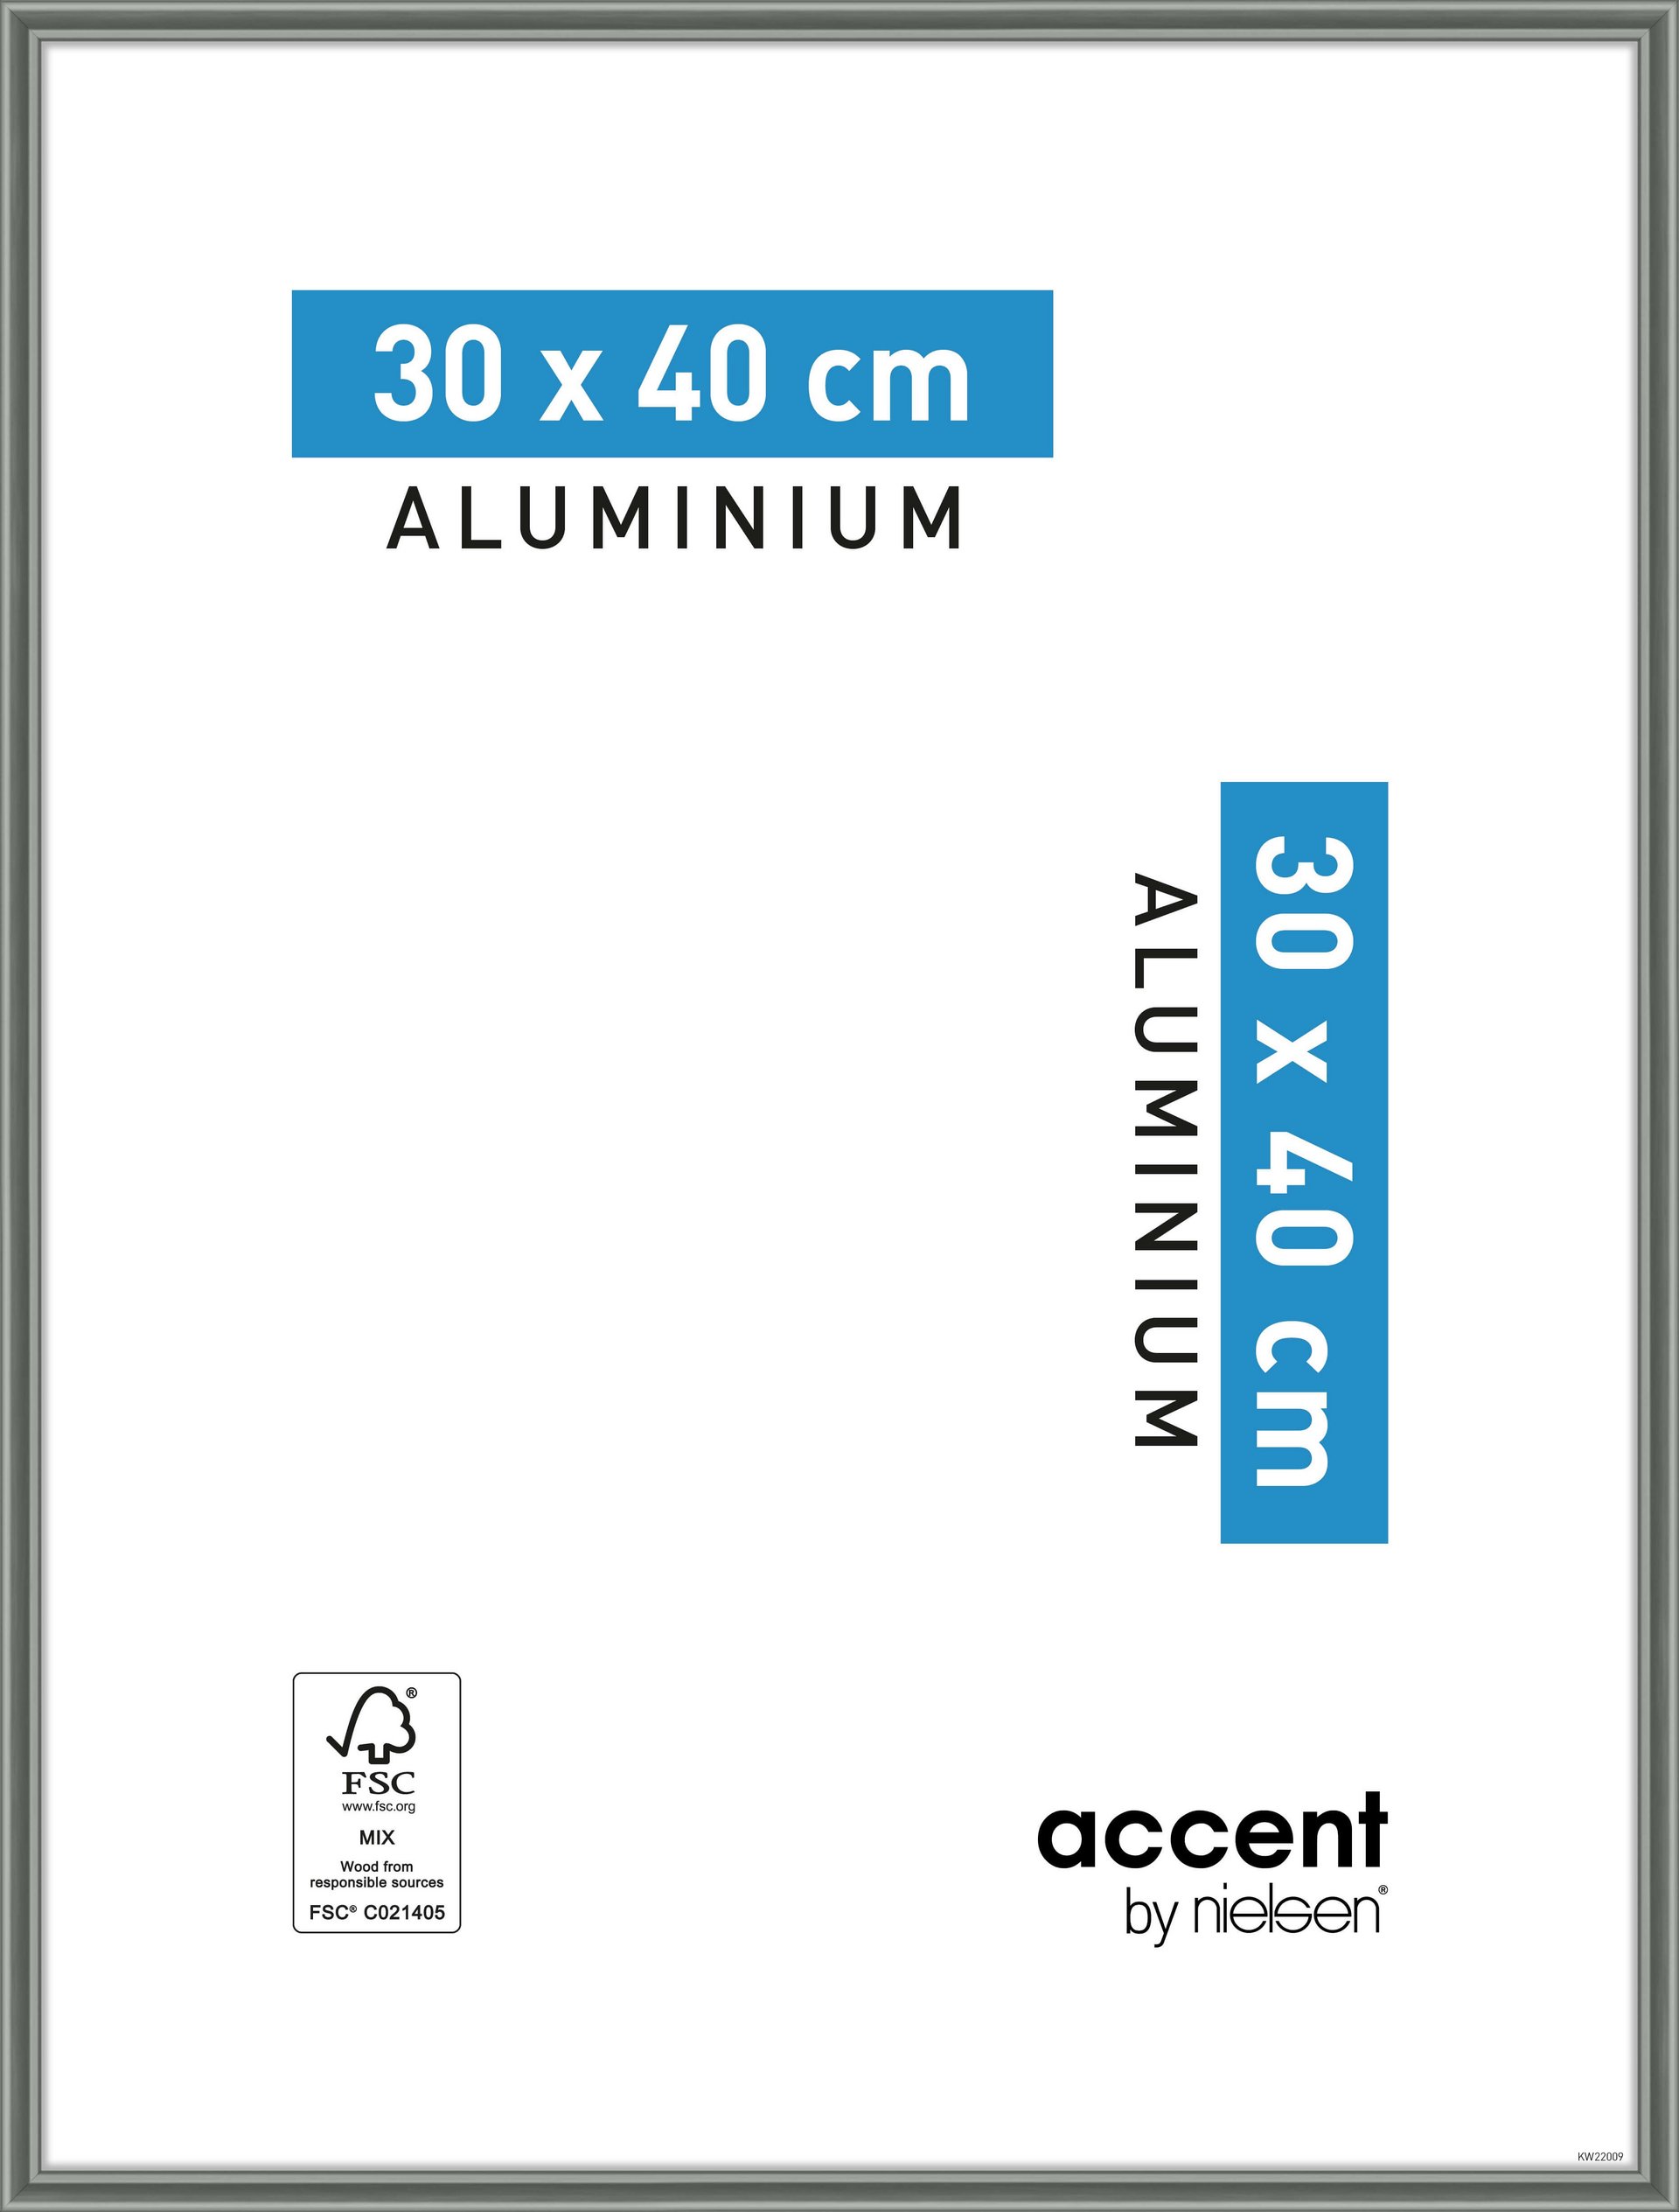 Silber 60x80 cm Accent Aluminium Bilderrahmen Accent 